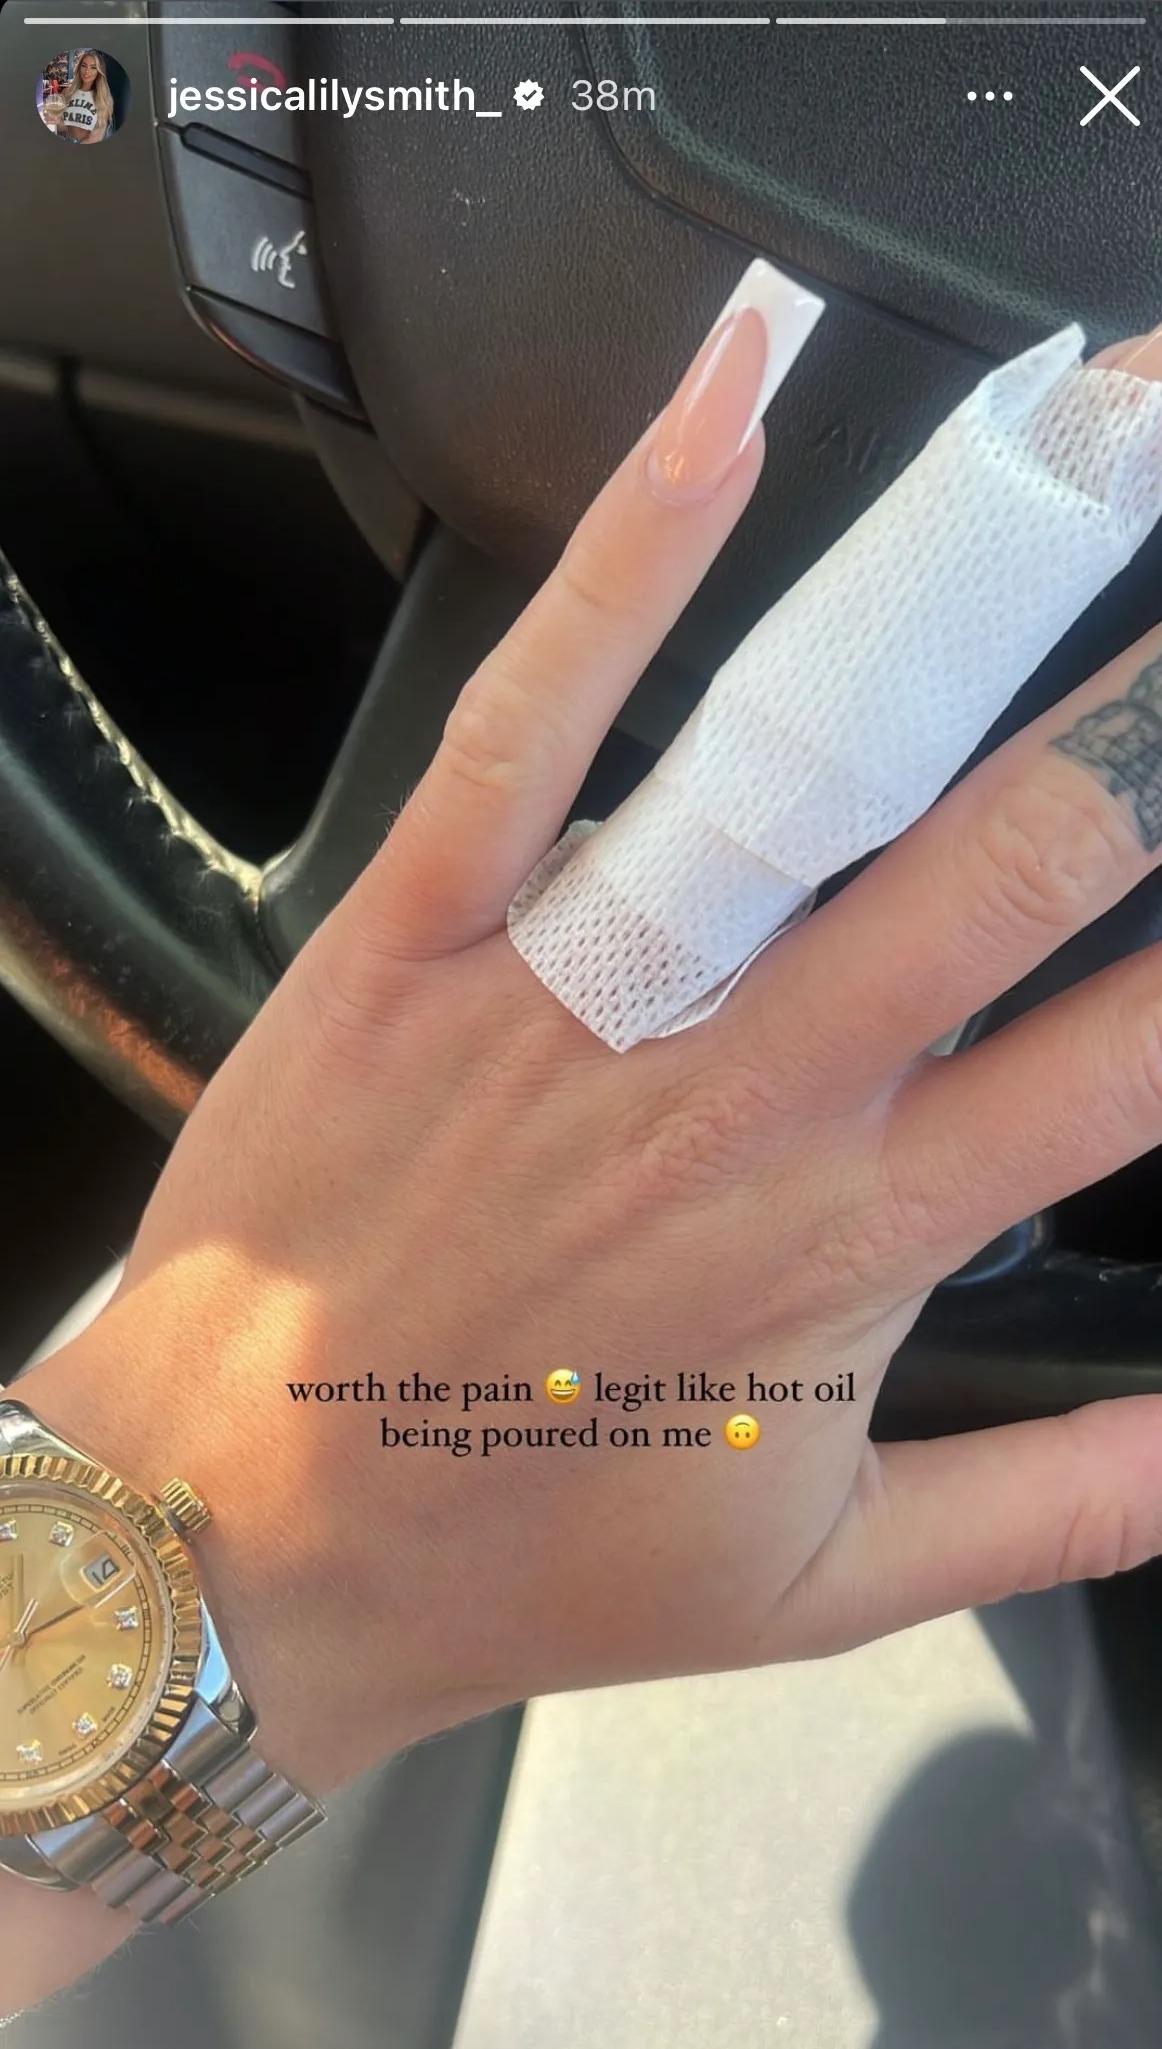 Jessica ließ sich das Verlobungsring-Tattoo entfernen